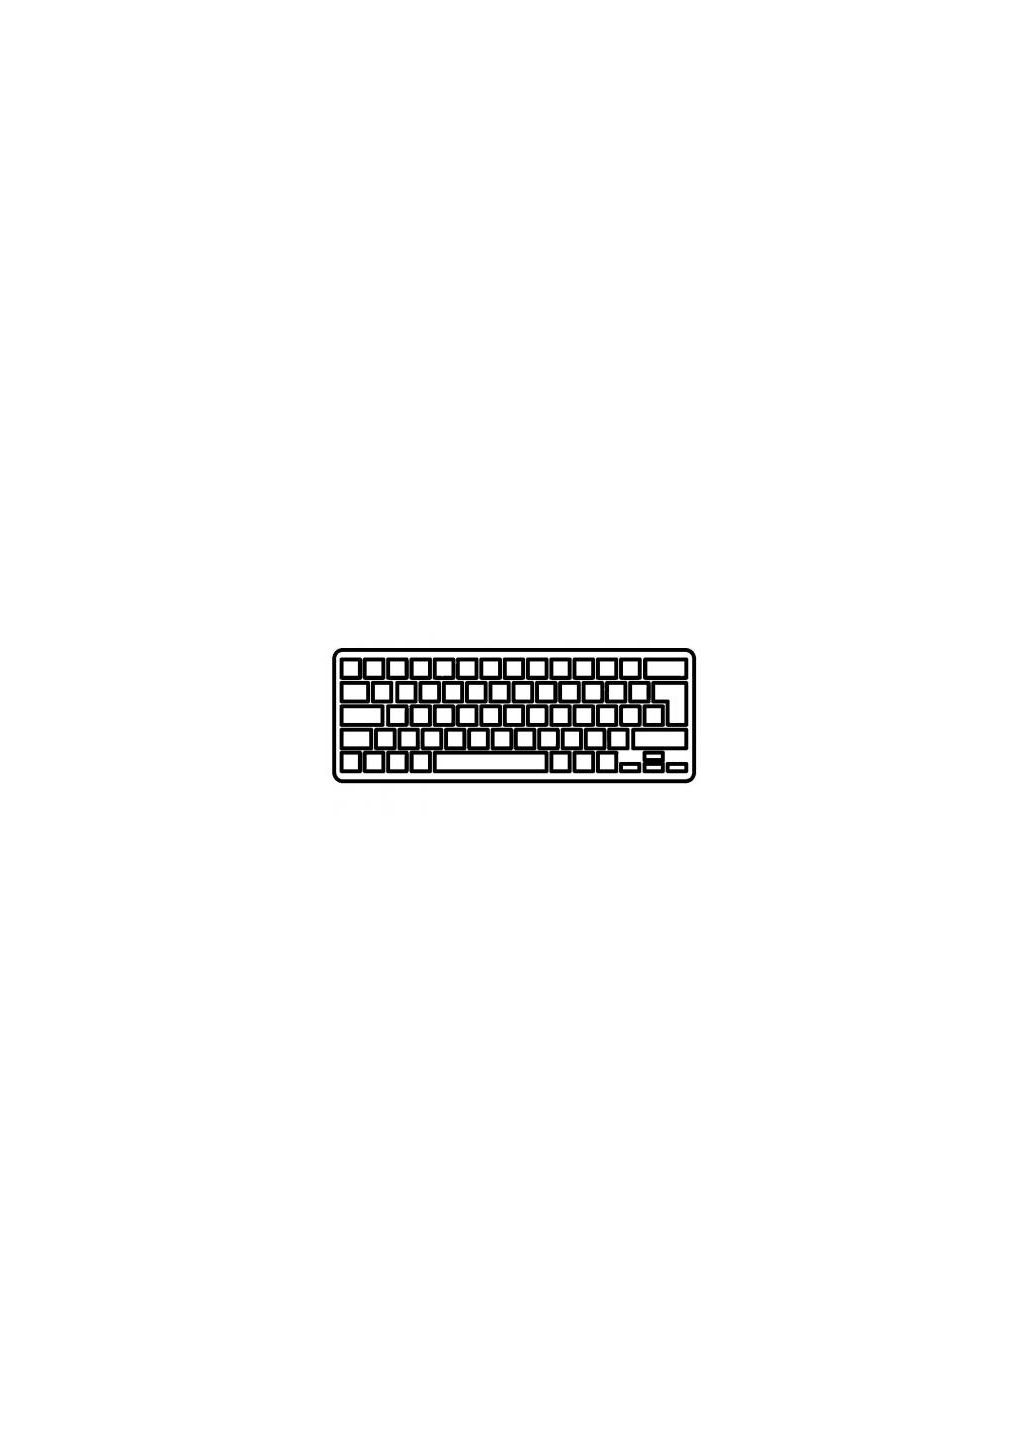 Клавиатура ноутбука Macbook Pro 15.4" A1286 (20092012) черн. без рамки RU/US (A43903) Apple macbook pro 15.4" a1286 (2009-2012) черн.без рамки (276706504)